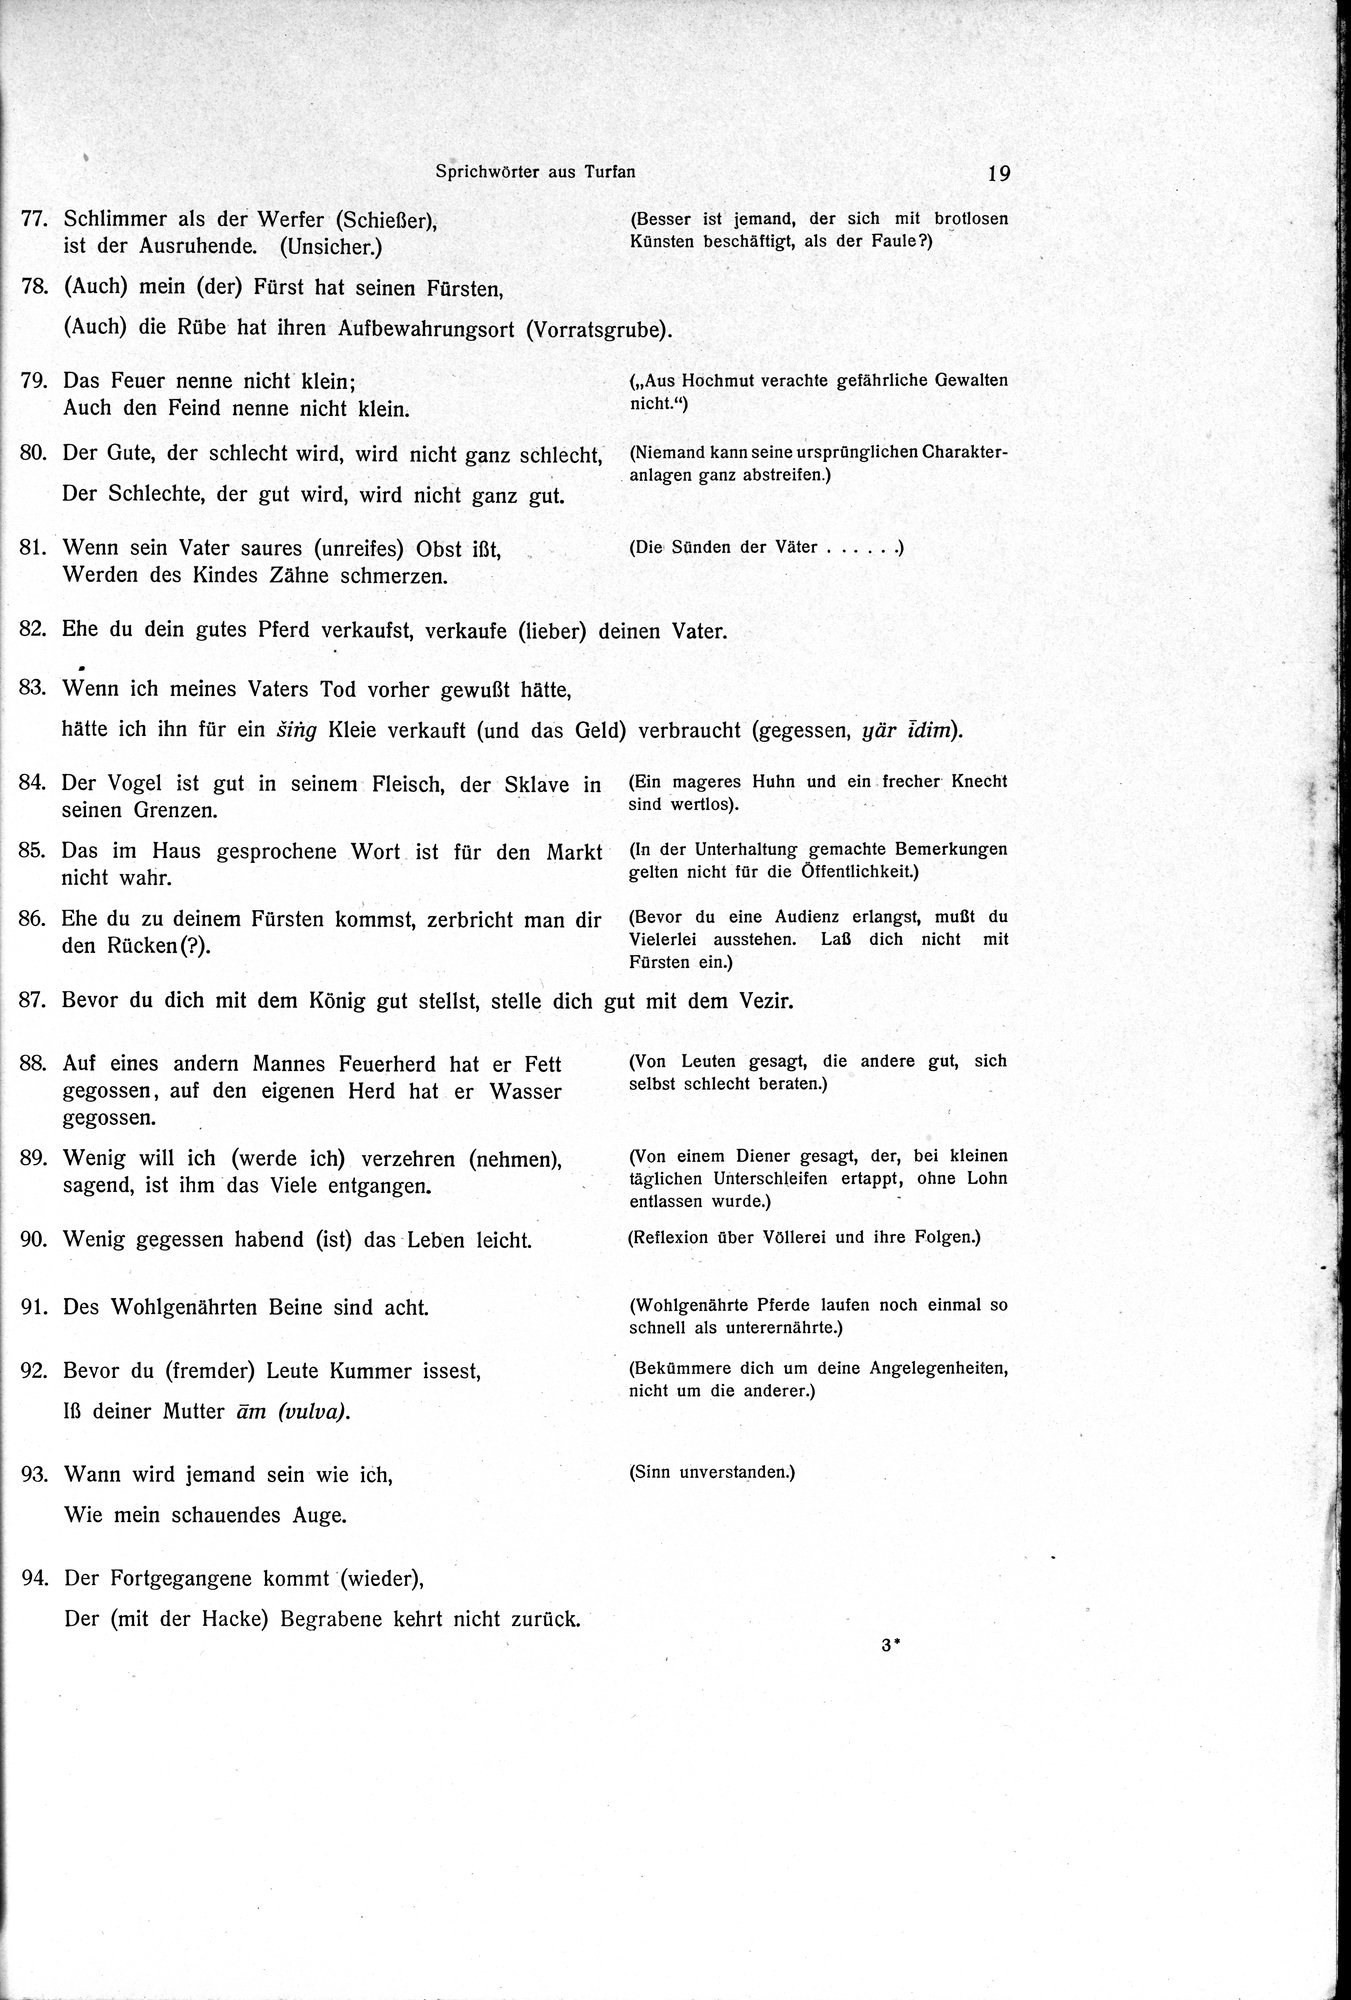 Sprichwörter und Lieder aus der Gegend von Turfan : vol.1 / Page 31 (Grayscale High Resolution Image)